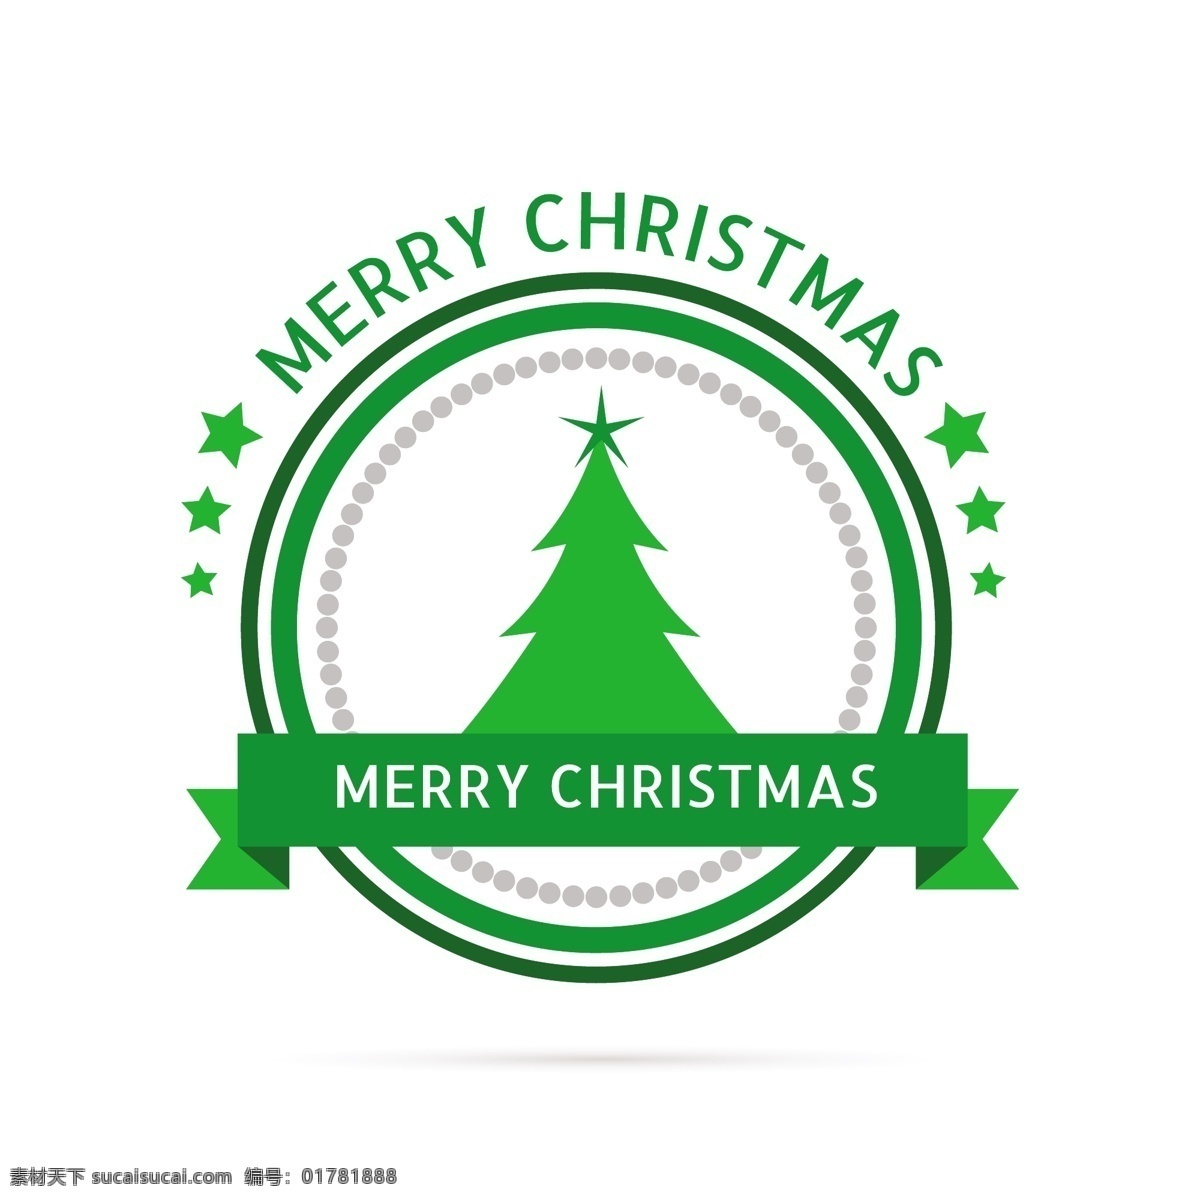 绿色圣诞标签 织带 圣诞 标签 徽章 绿色 快乐 圣诞节 冬季 星星 庆典 贺卡 明星 圣诞快乐